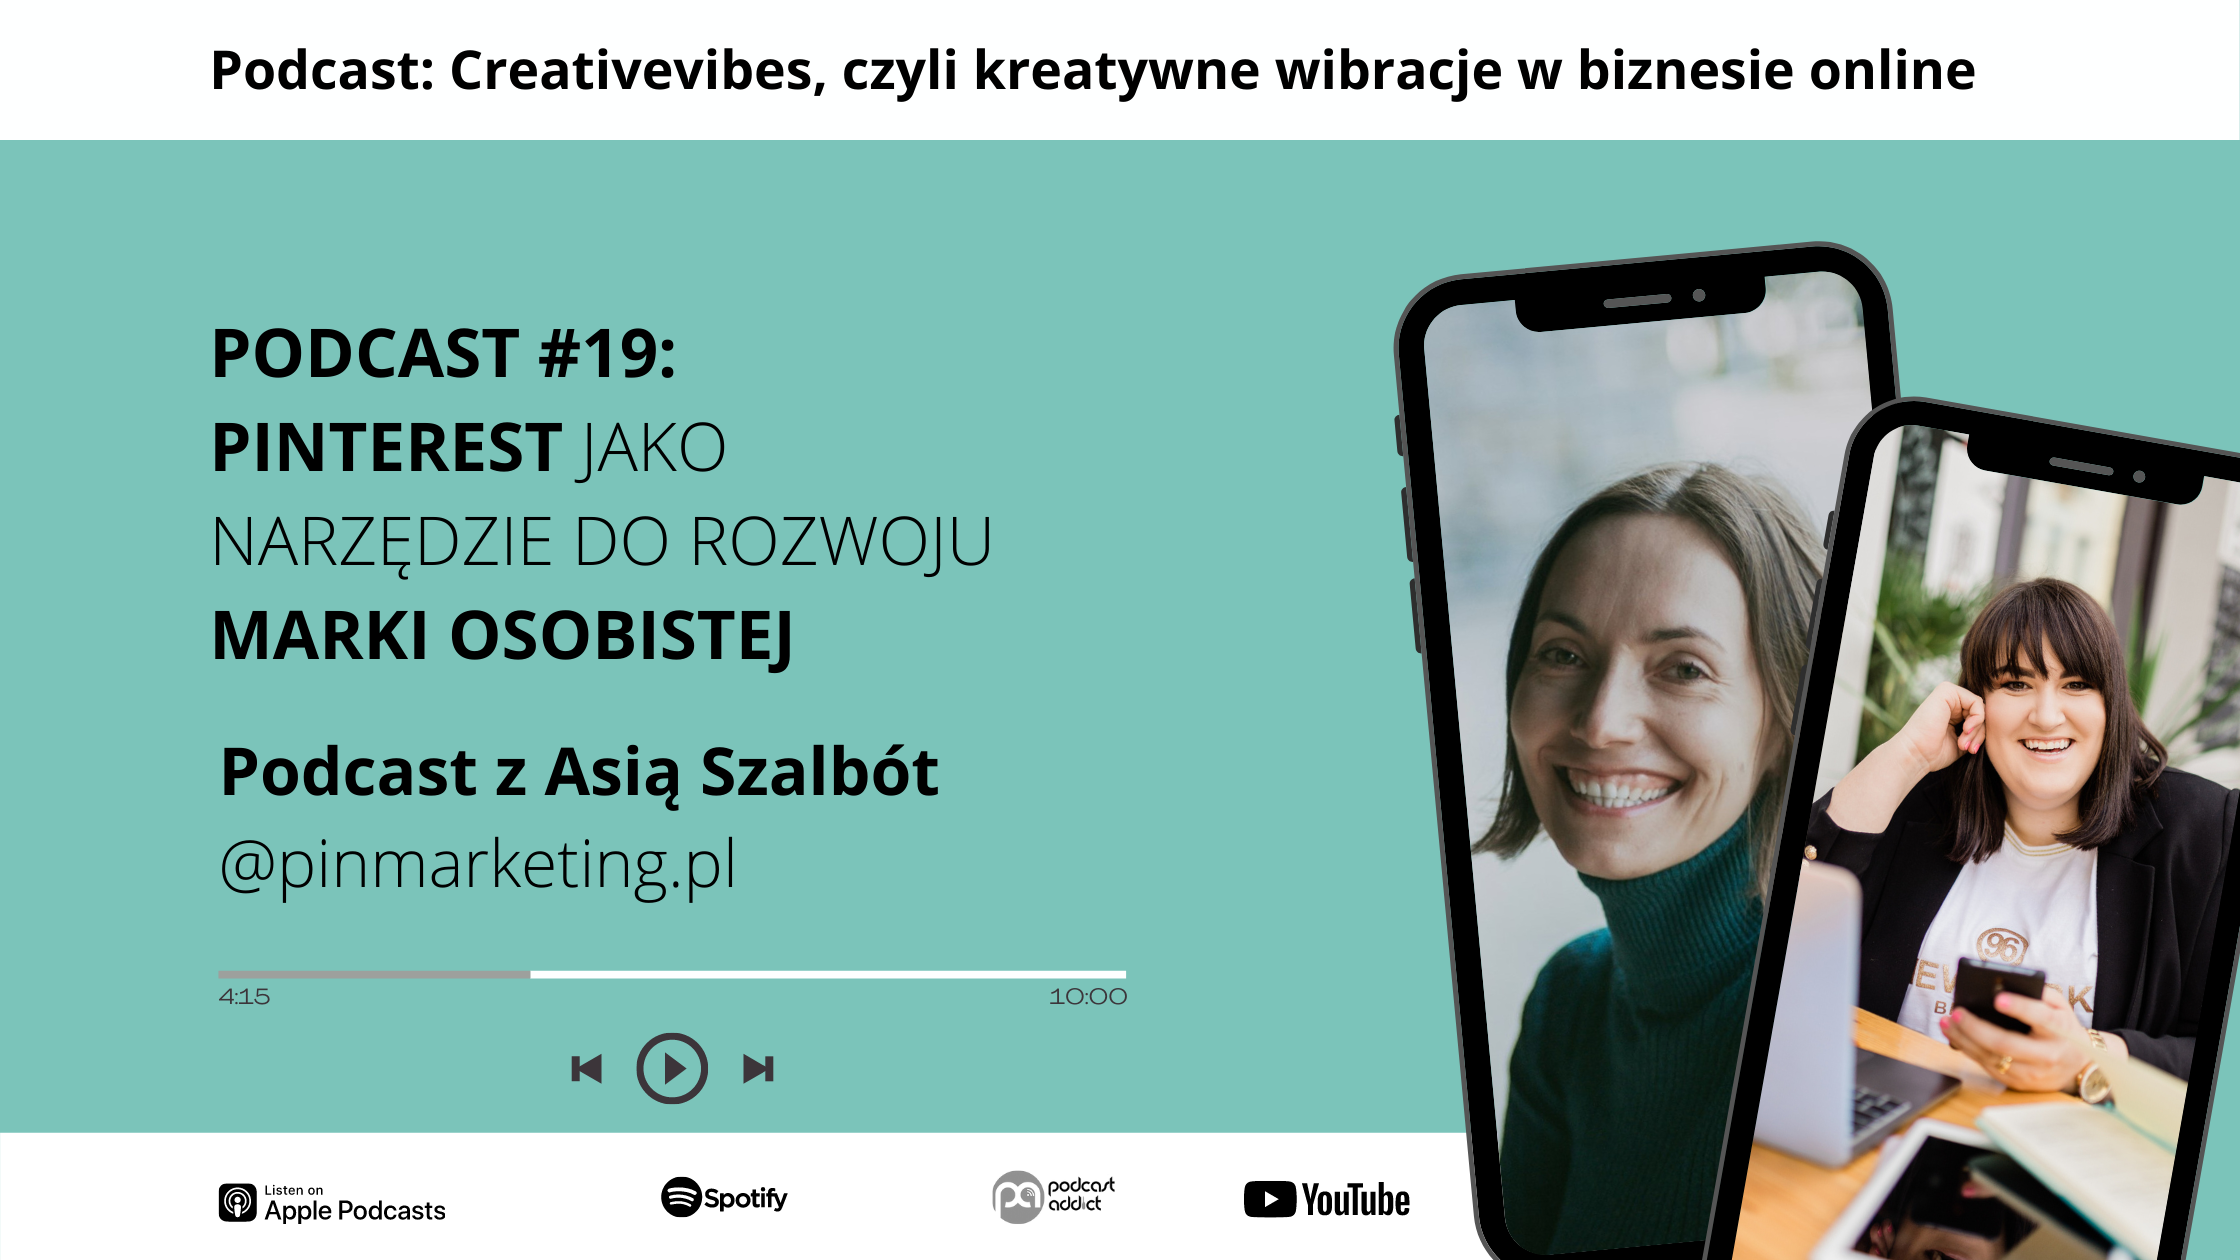 Podcast Creativevibes - Pinterest jako narzędzie do rozwoju marki osobistej - Asia Szalbót